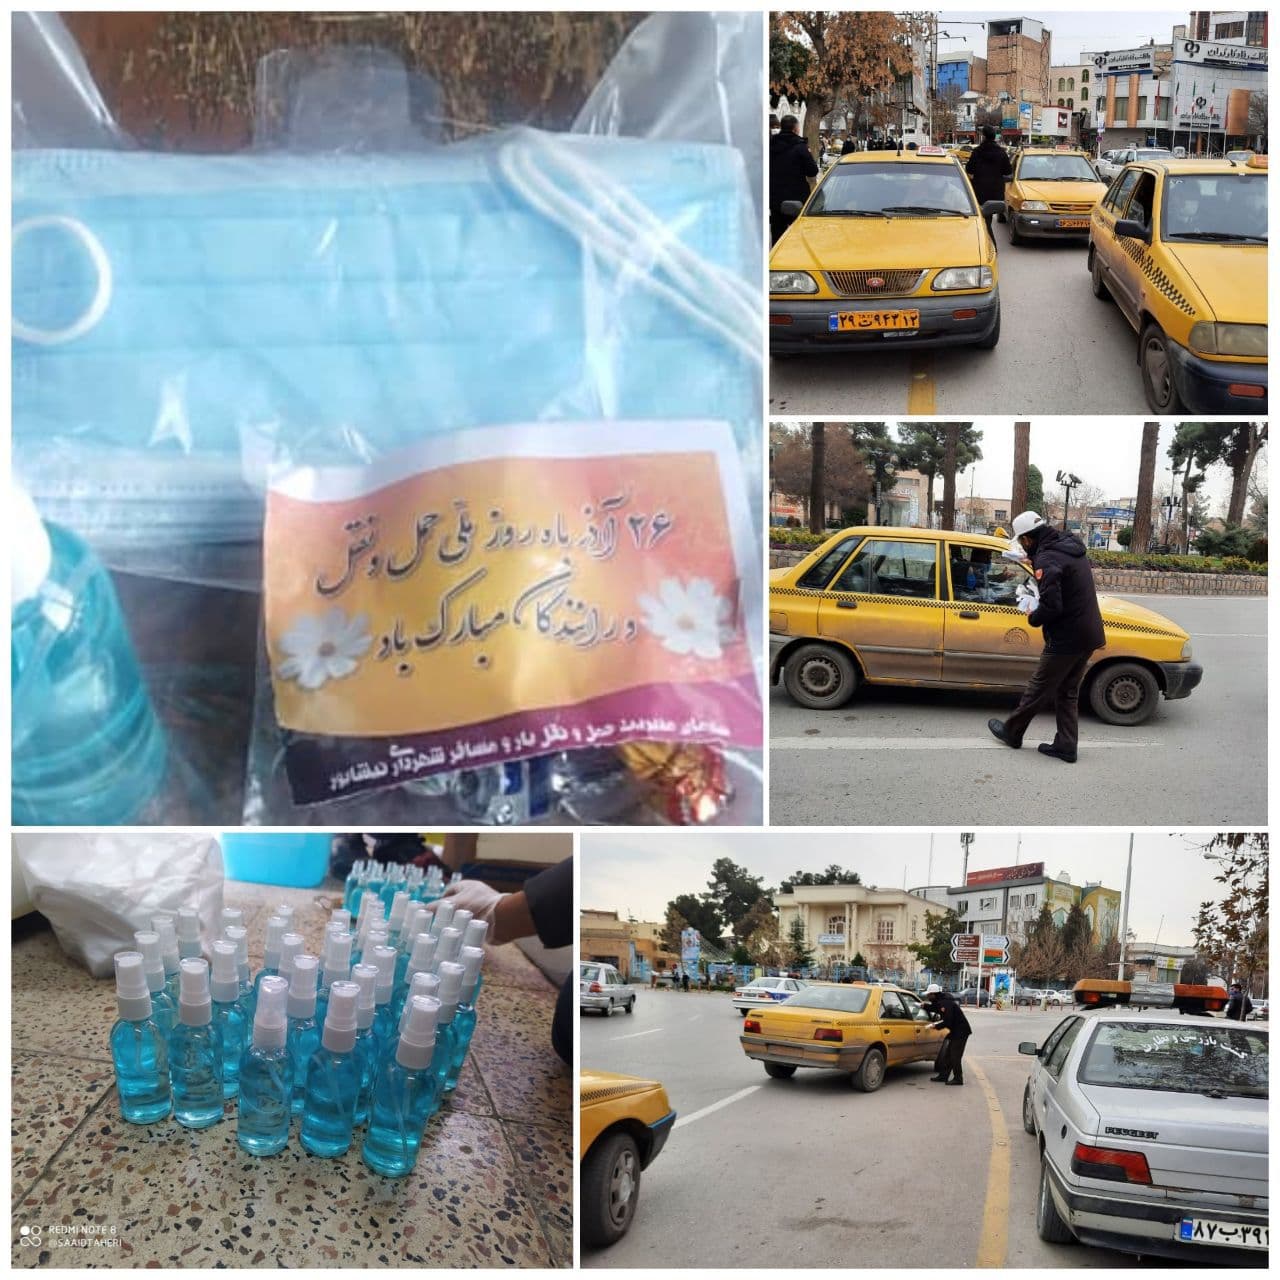 تهیه و توزیع پک بهداشتی به مناسبت ۲۶ آذرماه " روز حمل و نقل و رانندگان" بین اتوبوسرانان و تاکسیرانان